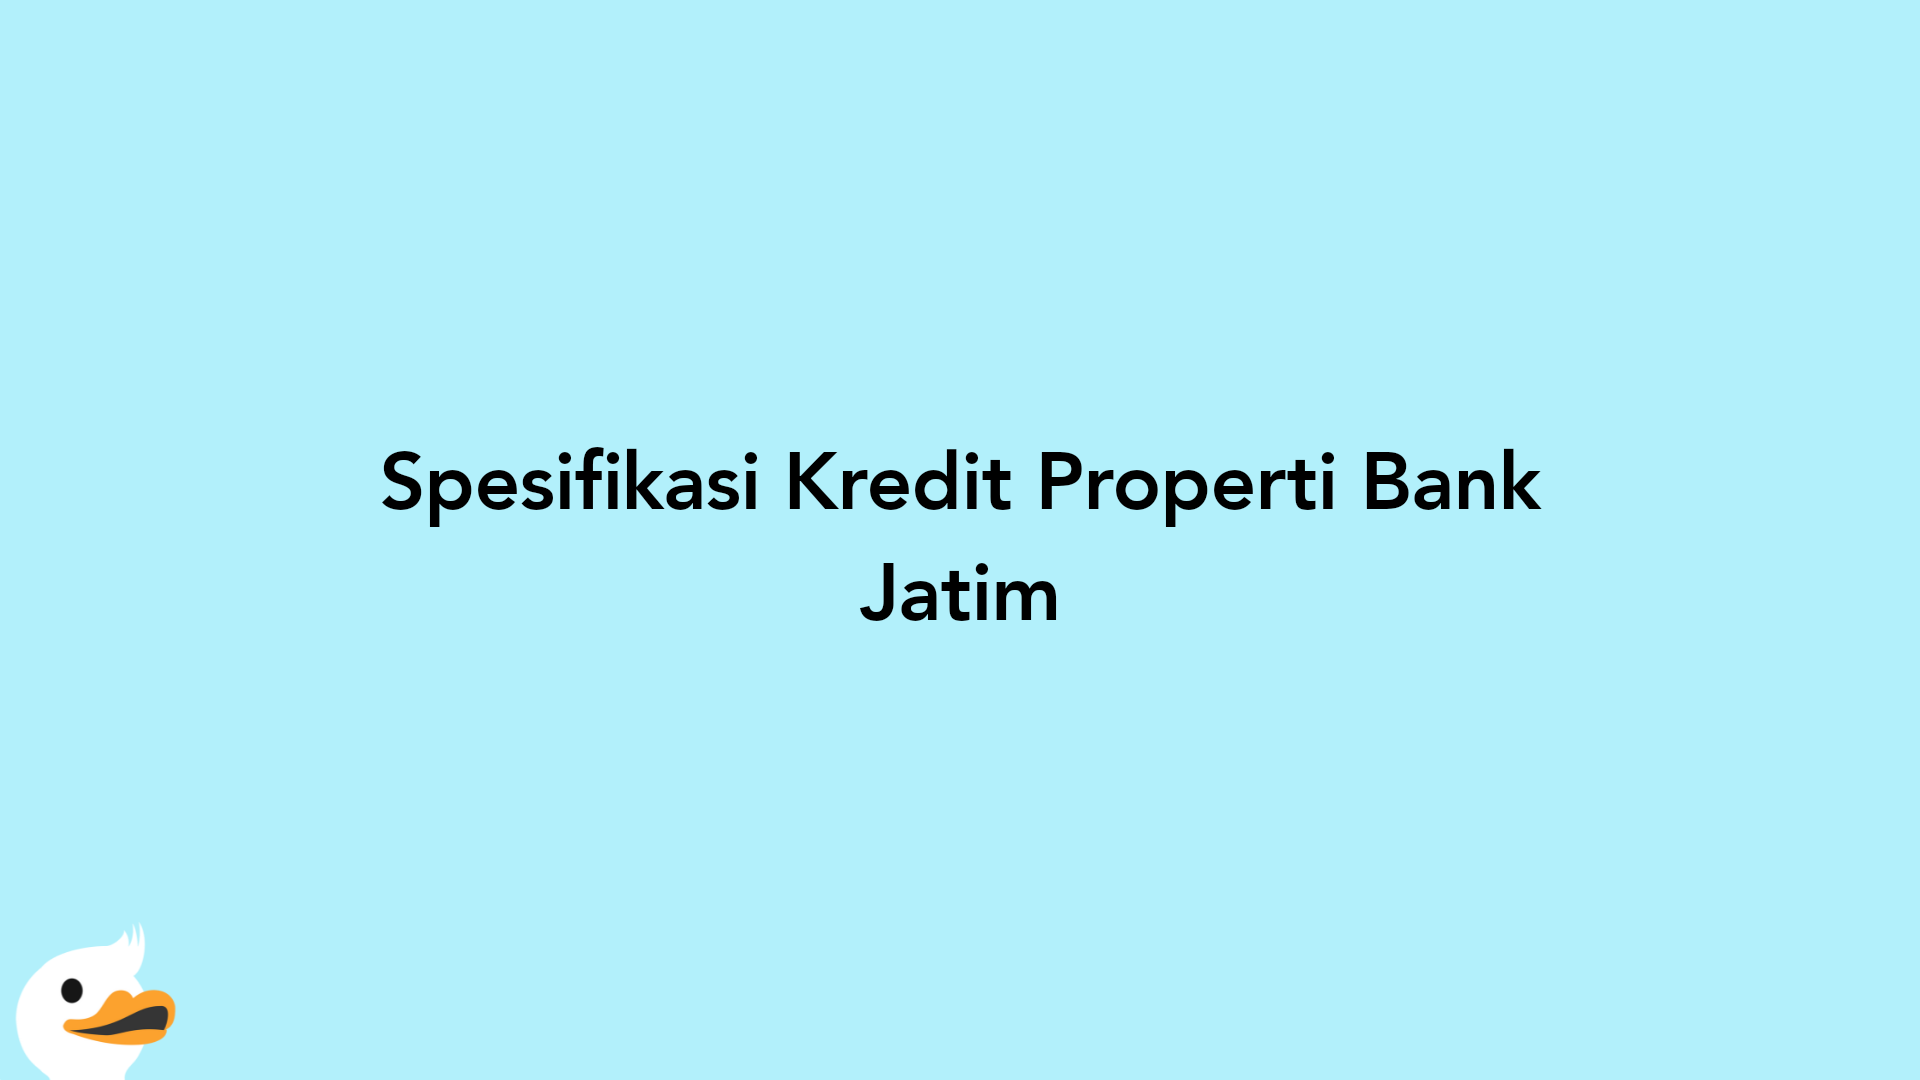 Spesifikasi Kredit Properti Bank Jatim